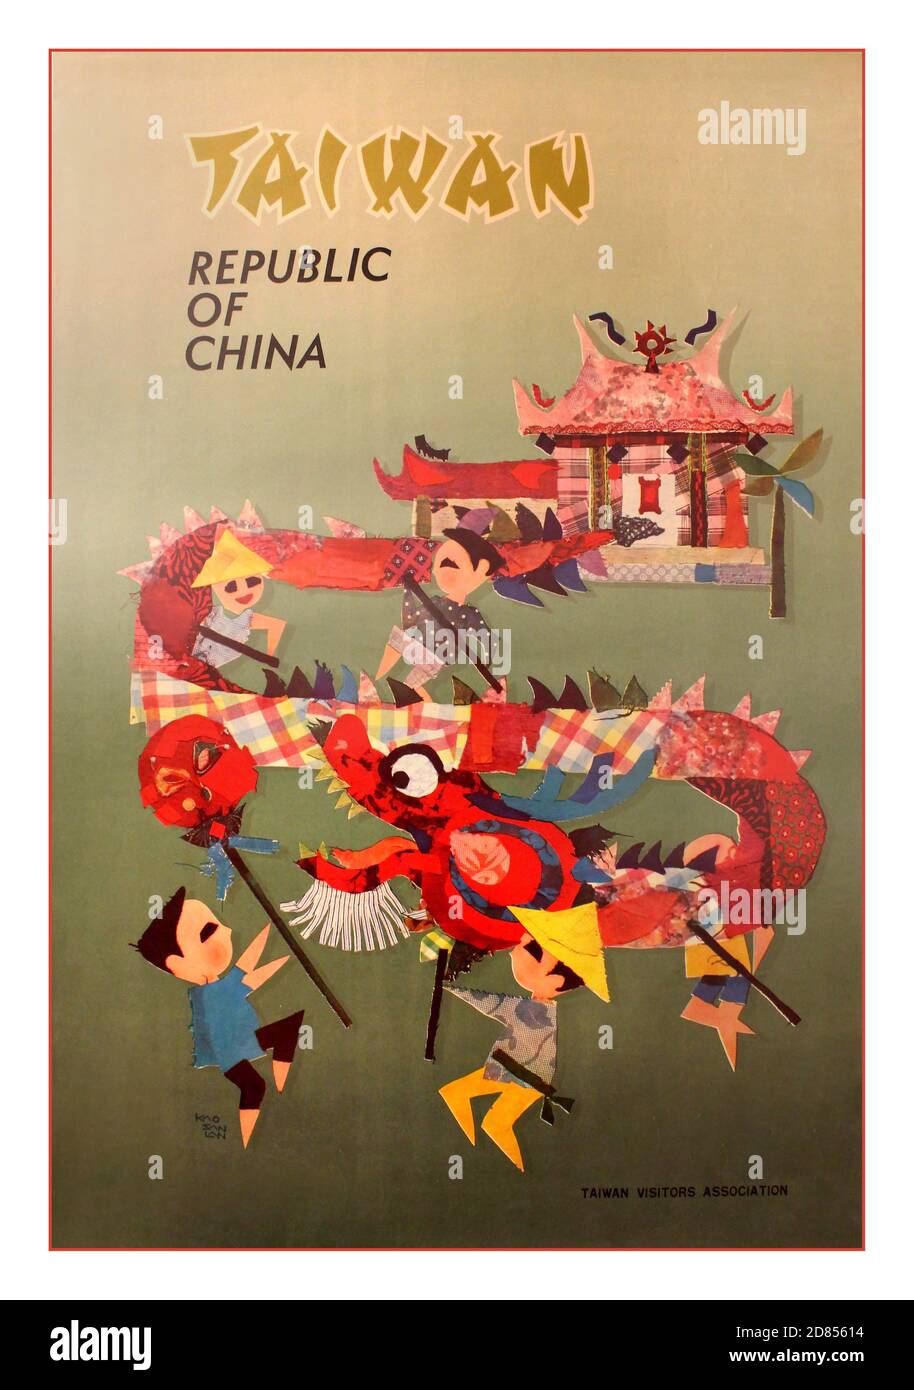 Taïwan, République de Chine, années 60 affiche originale de voyage vintage annonçant Taiwan, République de Chine image d'enfants et une danse de dragon sur fond vert conçu par Kao San LAN. Publié par l'Association de visite de Taïwan. Imprimé par Ming Ho Art Press, Taipei. Poster de voyage, Taïwan, années 1960, design par Kao San LAN Banque D'Images